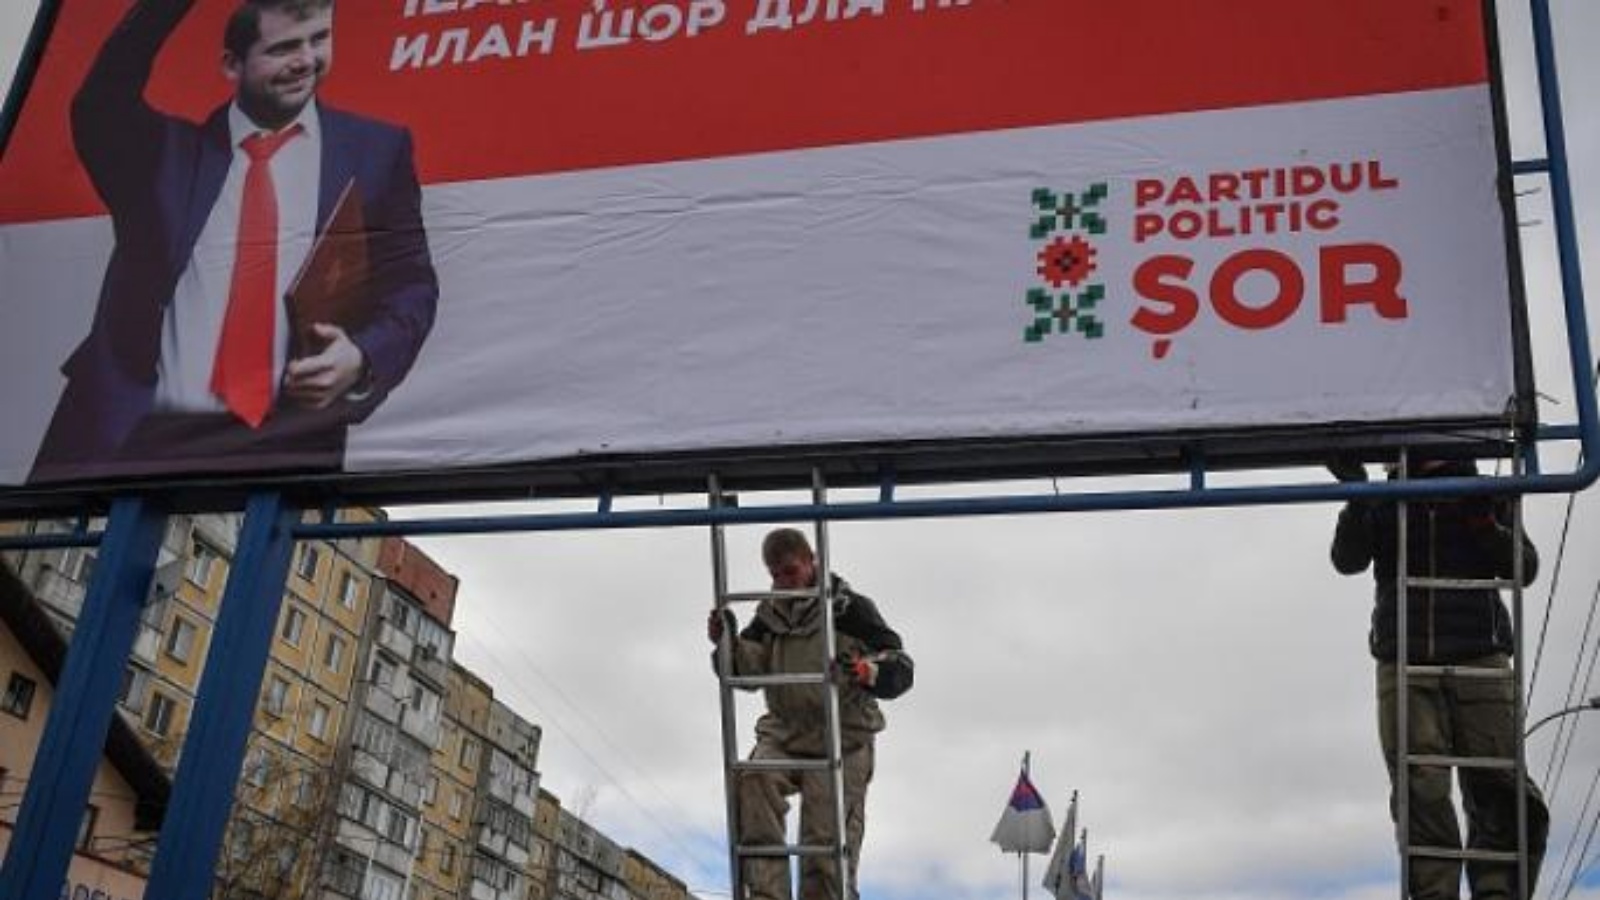 عمال ينصبون إعلاناً للحملة الانتخابية لإلهان شور الموالي لروسيا عام 2019